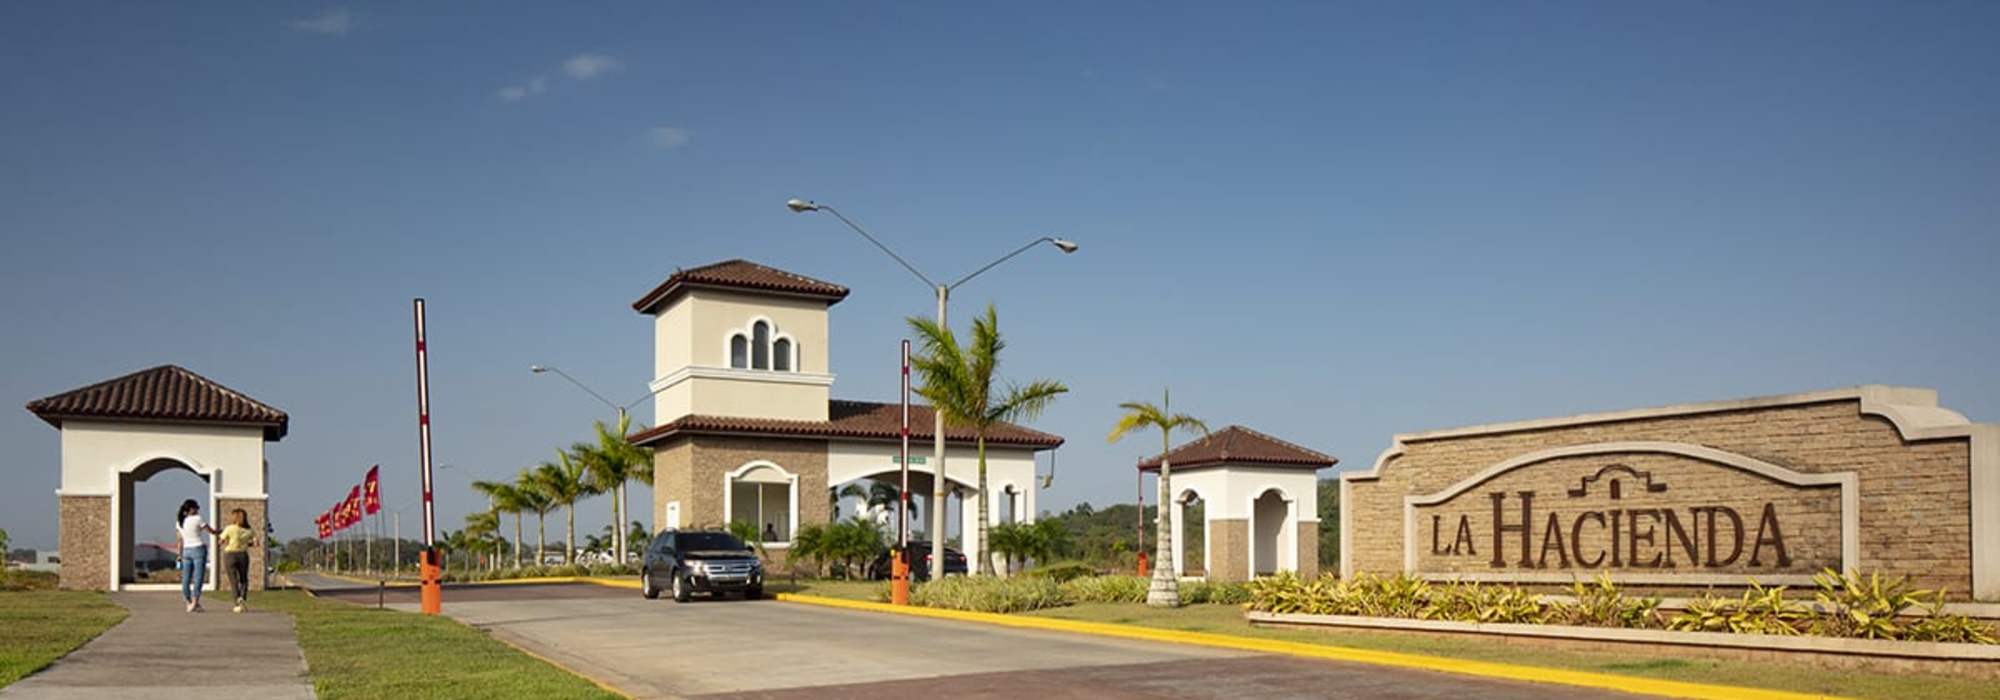 Project La Hacienda